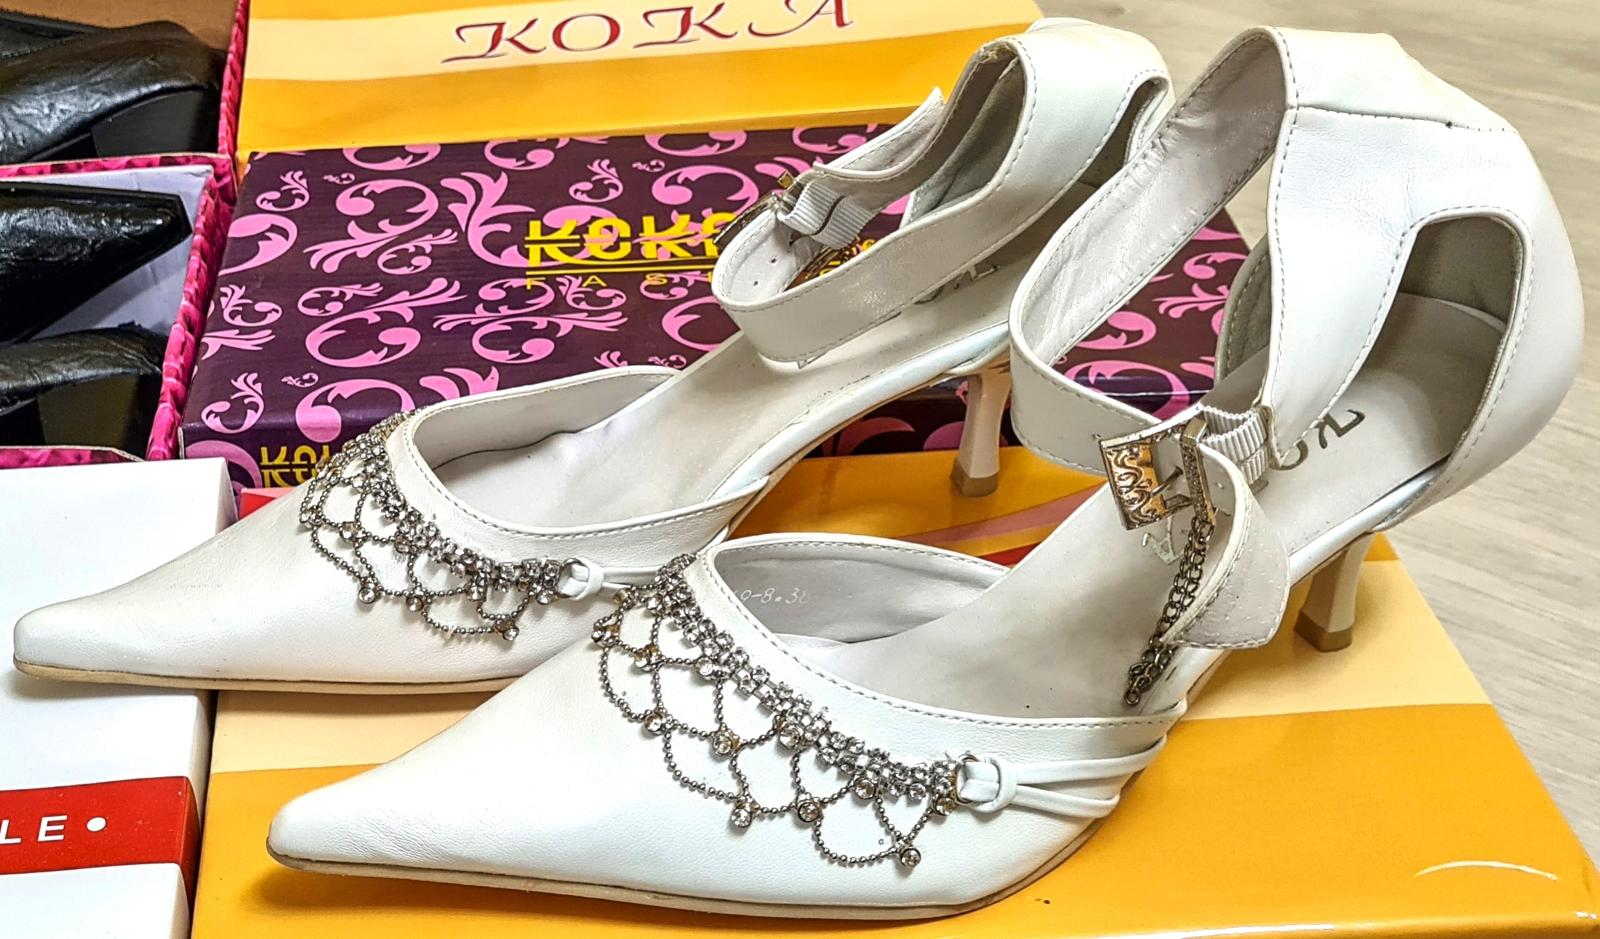 Dámská obuv Koka a Bao Bao, SADA 6 párů, v. 36 cena je za CELOU SADU ! - Dámské boty